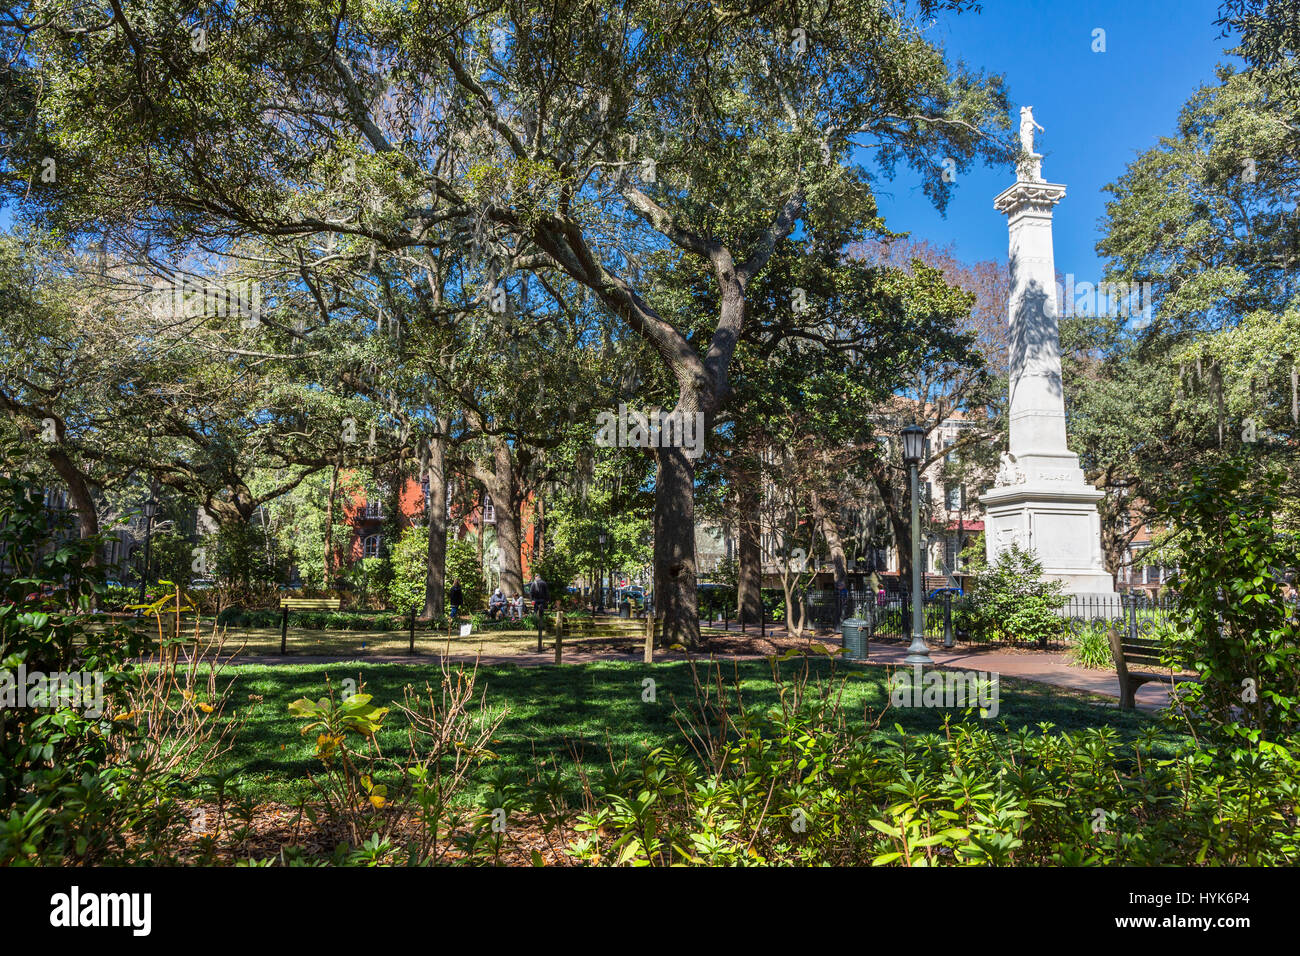 Savannah, Georgia.  Denkmal für Casimer Pulaski, polnische Adlige in amerikanische Revolution bei Savannah getötet.  Monterey Platz. Stockfoto